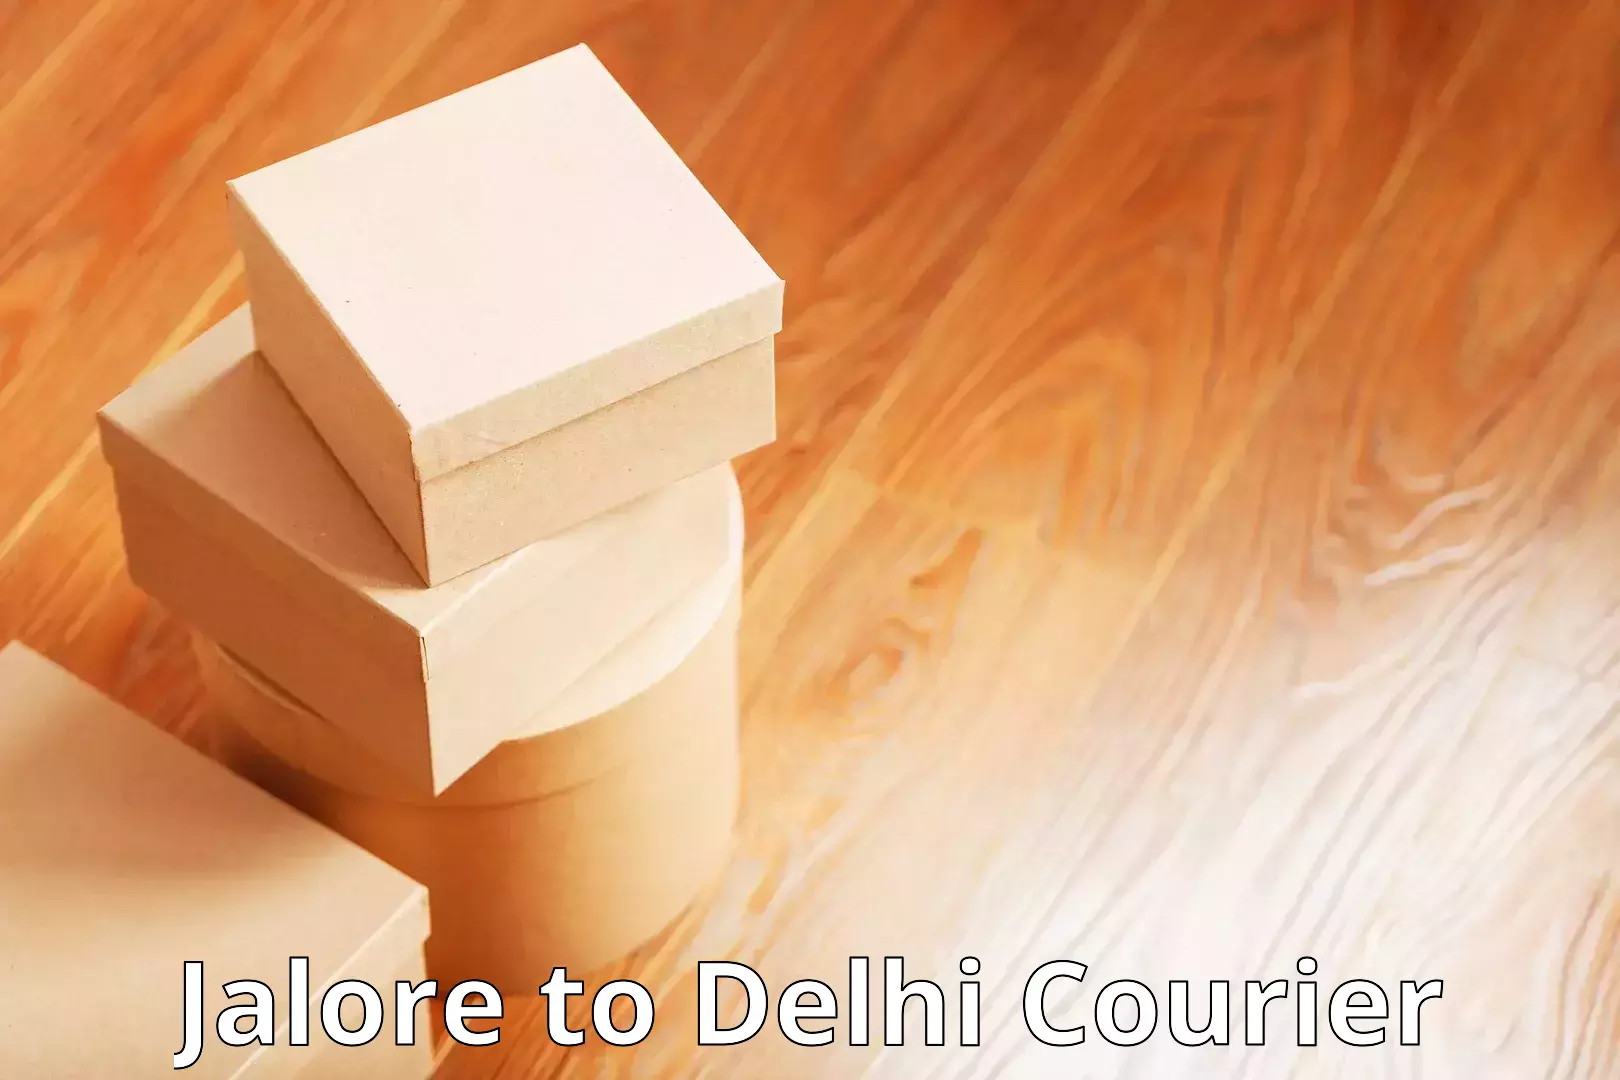 Residential courier service Jalore to Jamia Millia Islamia New Delhi